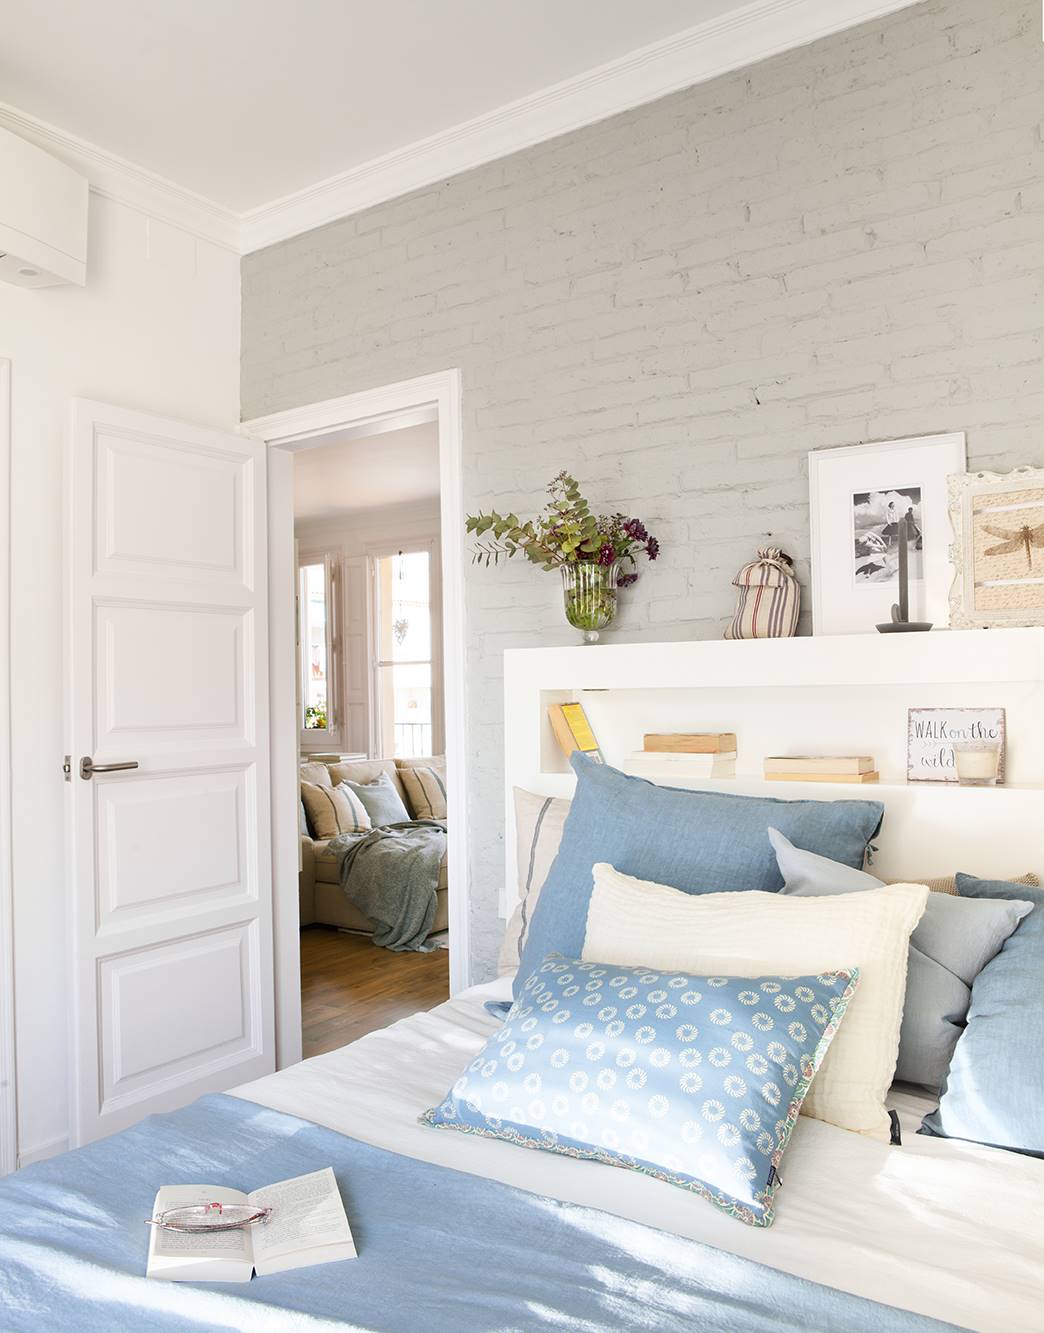 Dormitorio en gris y azul con puerta blanca con cuarterones.